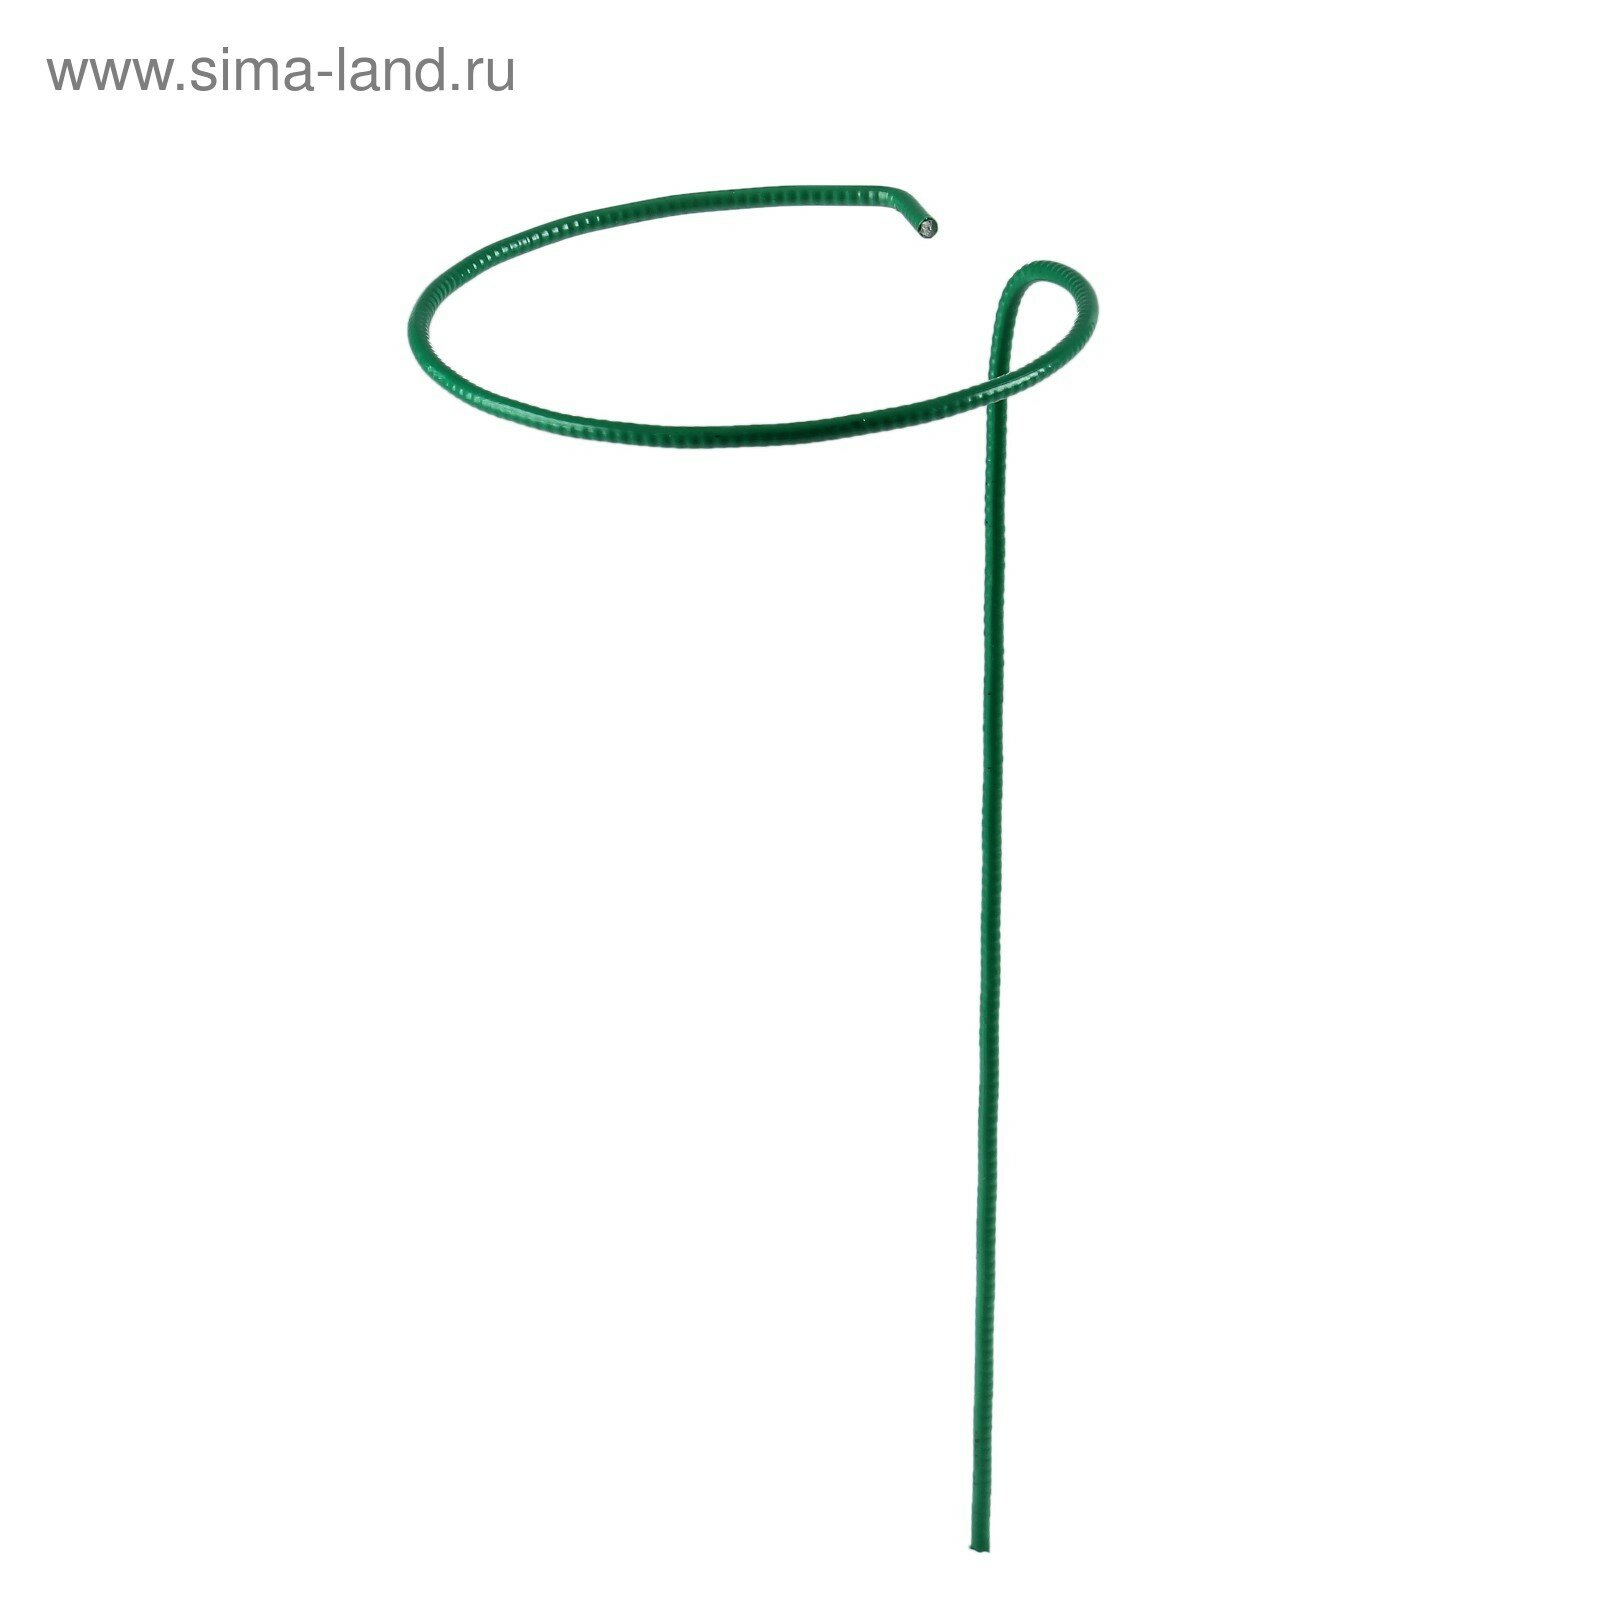 Кустодержатель для клубники, d = 15 см, h = 25 см, ножка d = 0,3 см, металл, зелёный,